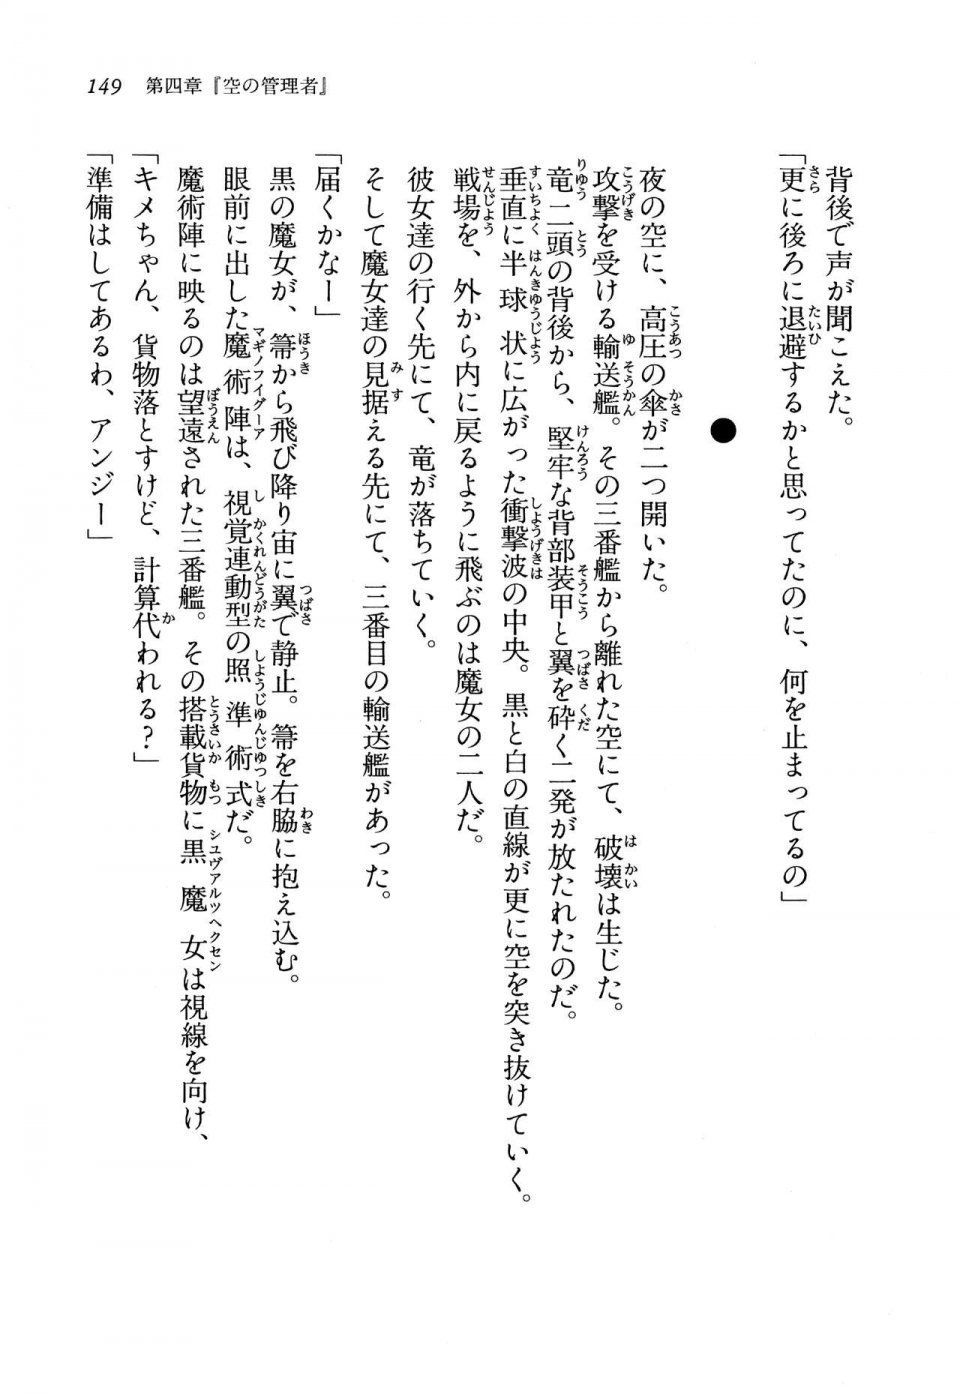 Kyoukai Senjou no Horizon LN Vol 13(6A) - Photo #149